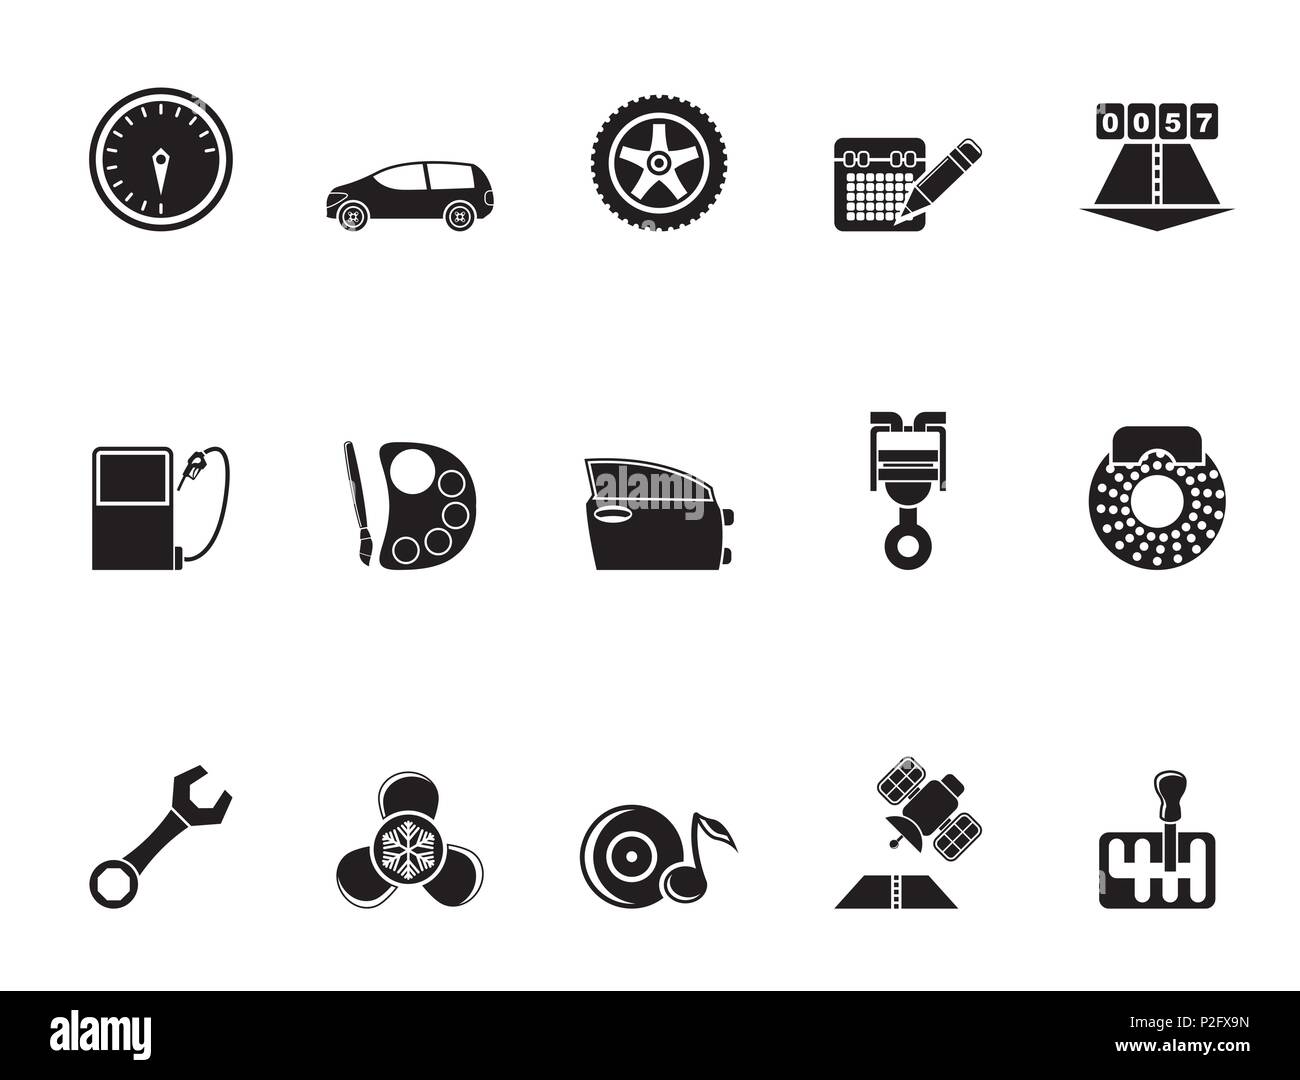 Silueta de piezas de automóviles, servicios y características de iconos - conjunto de iconos vectoriales Ilustración del Vector